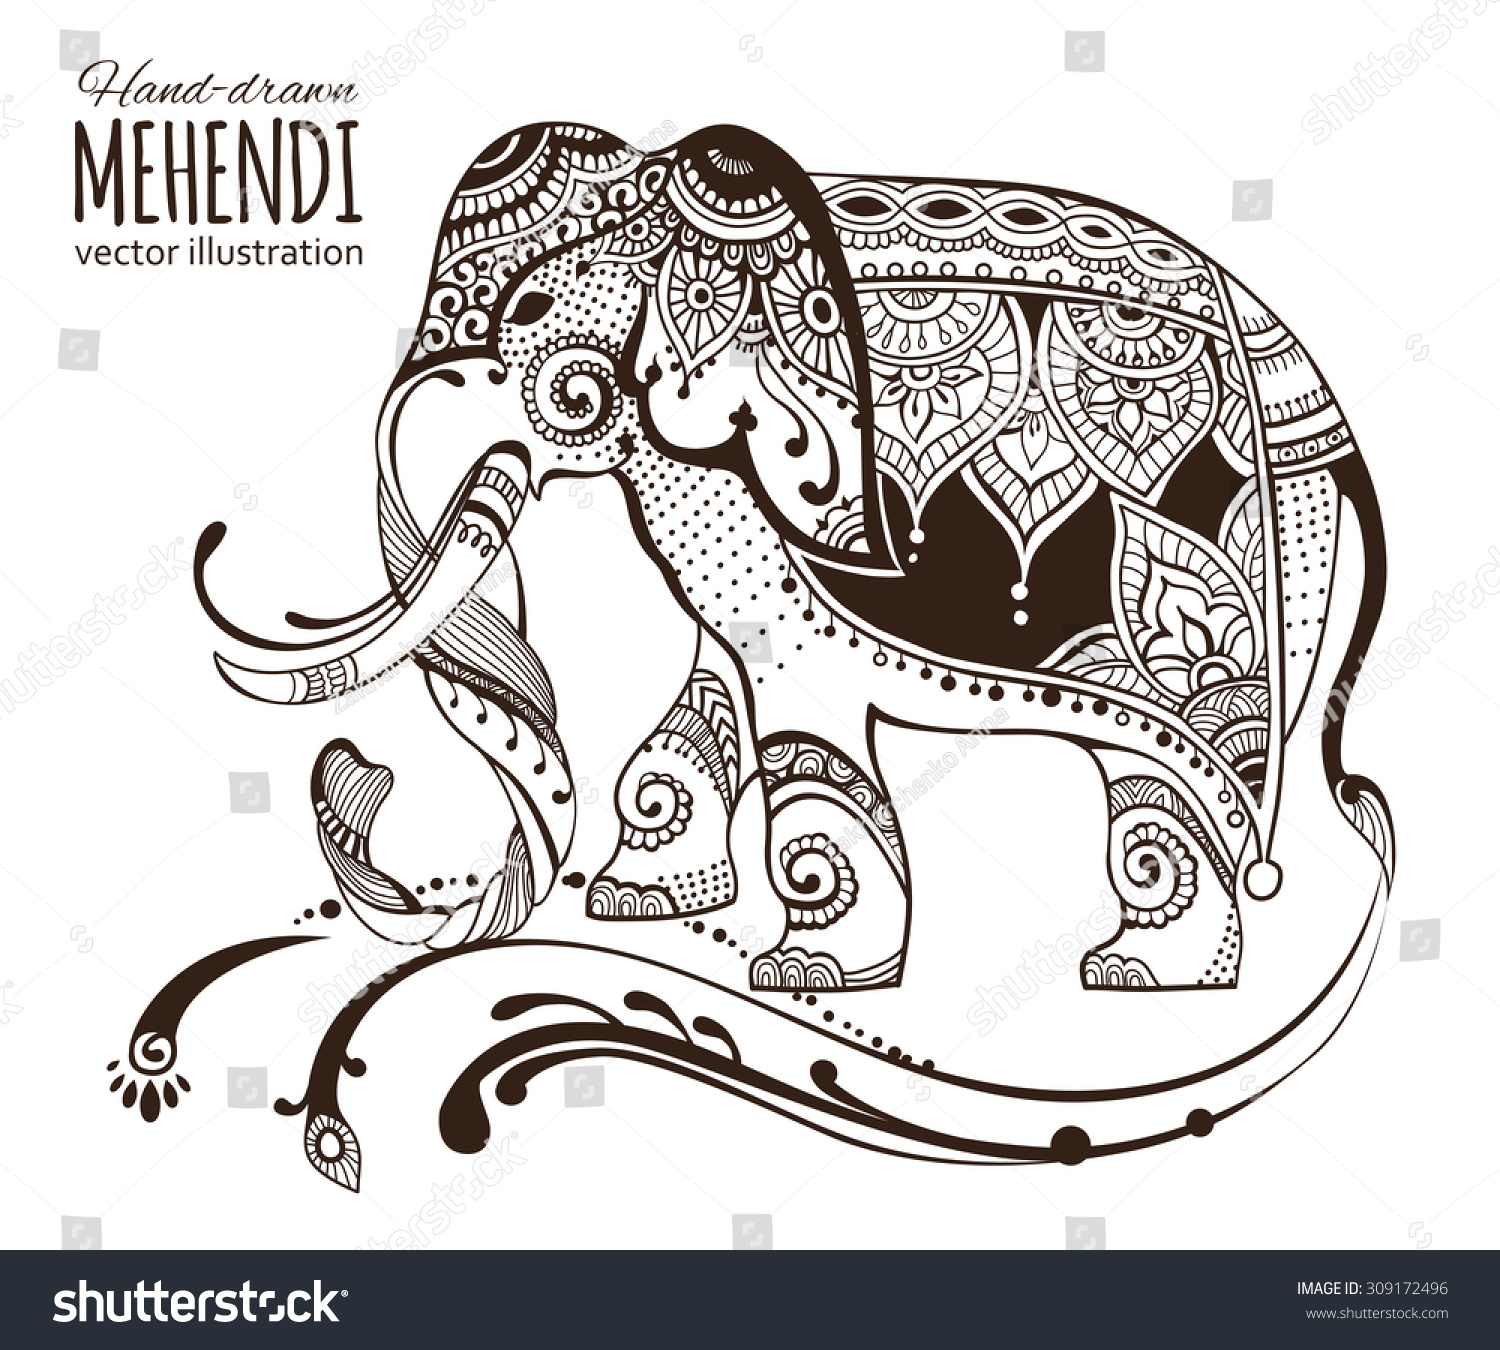 手绘mehendi大象。非洲民族,印度,图腾纹身设